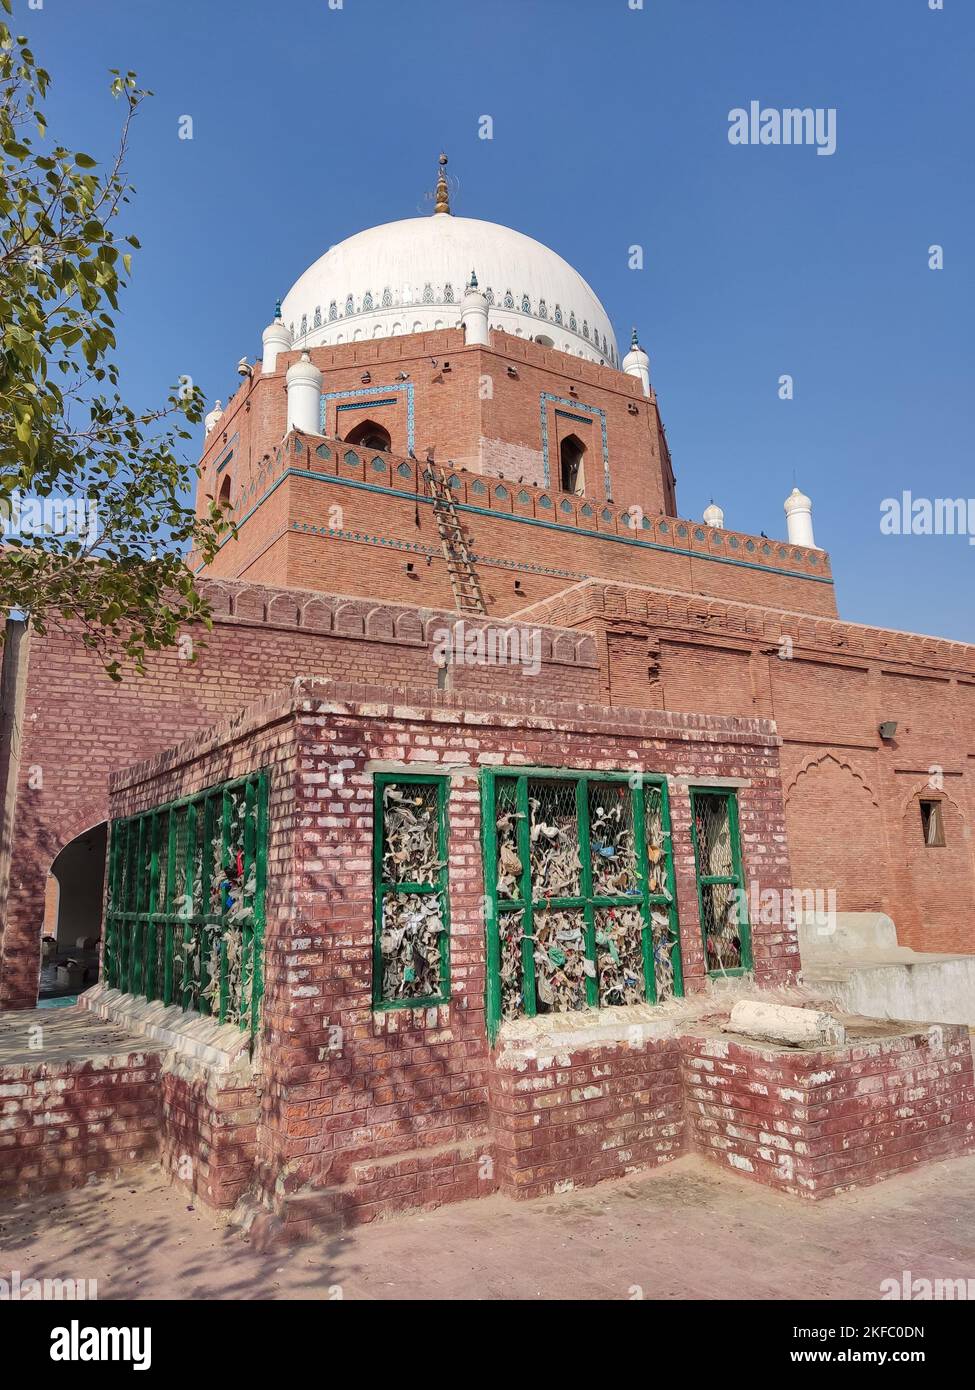 Der Schrein von Bahauddin Zakariya ist ein Schrein aus dem 13.. Jahrhundert, der sich in der Stadt Multan in der pakistanischen Provinz Punjab befindet Stockfoto